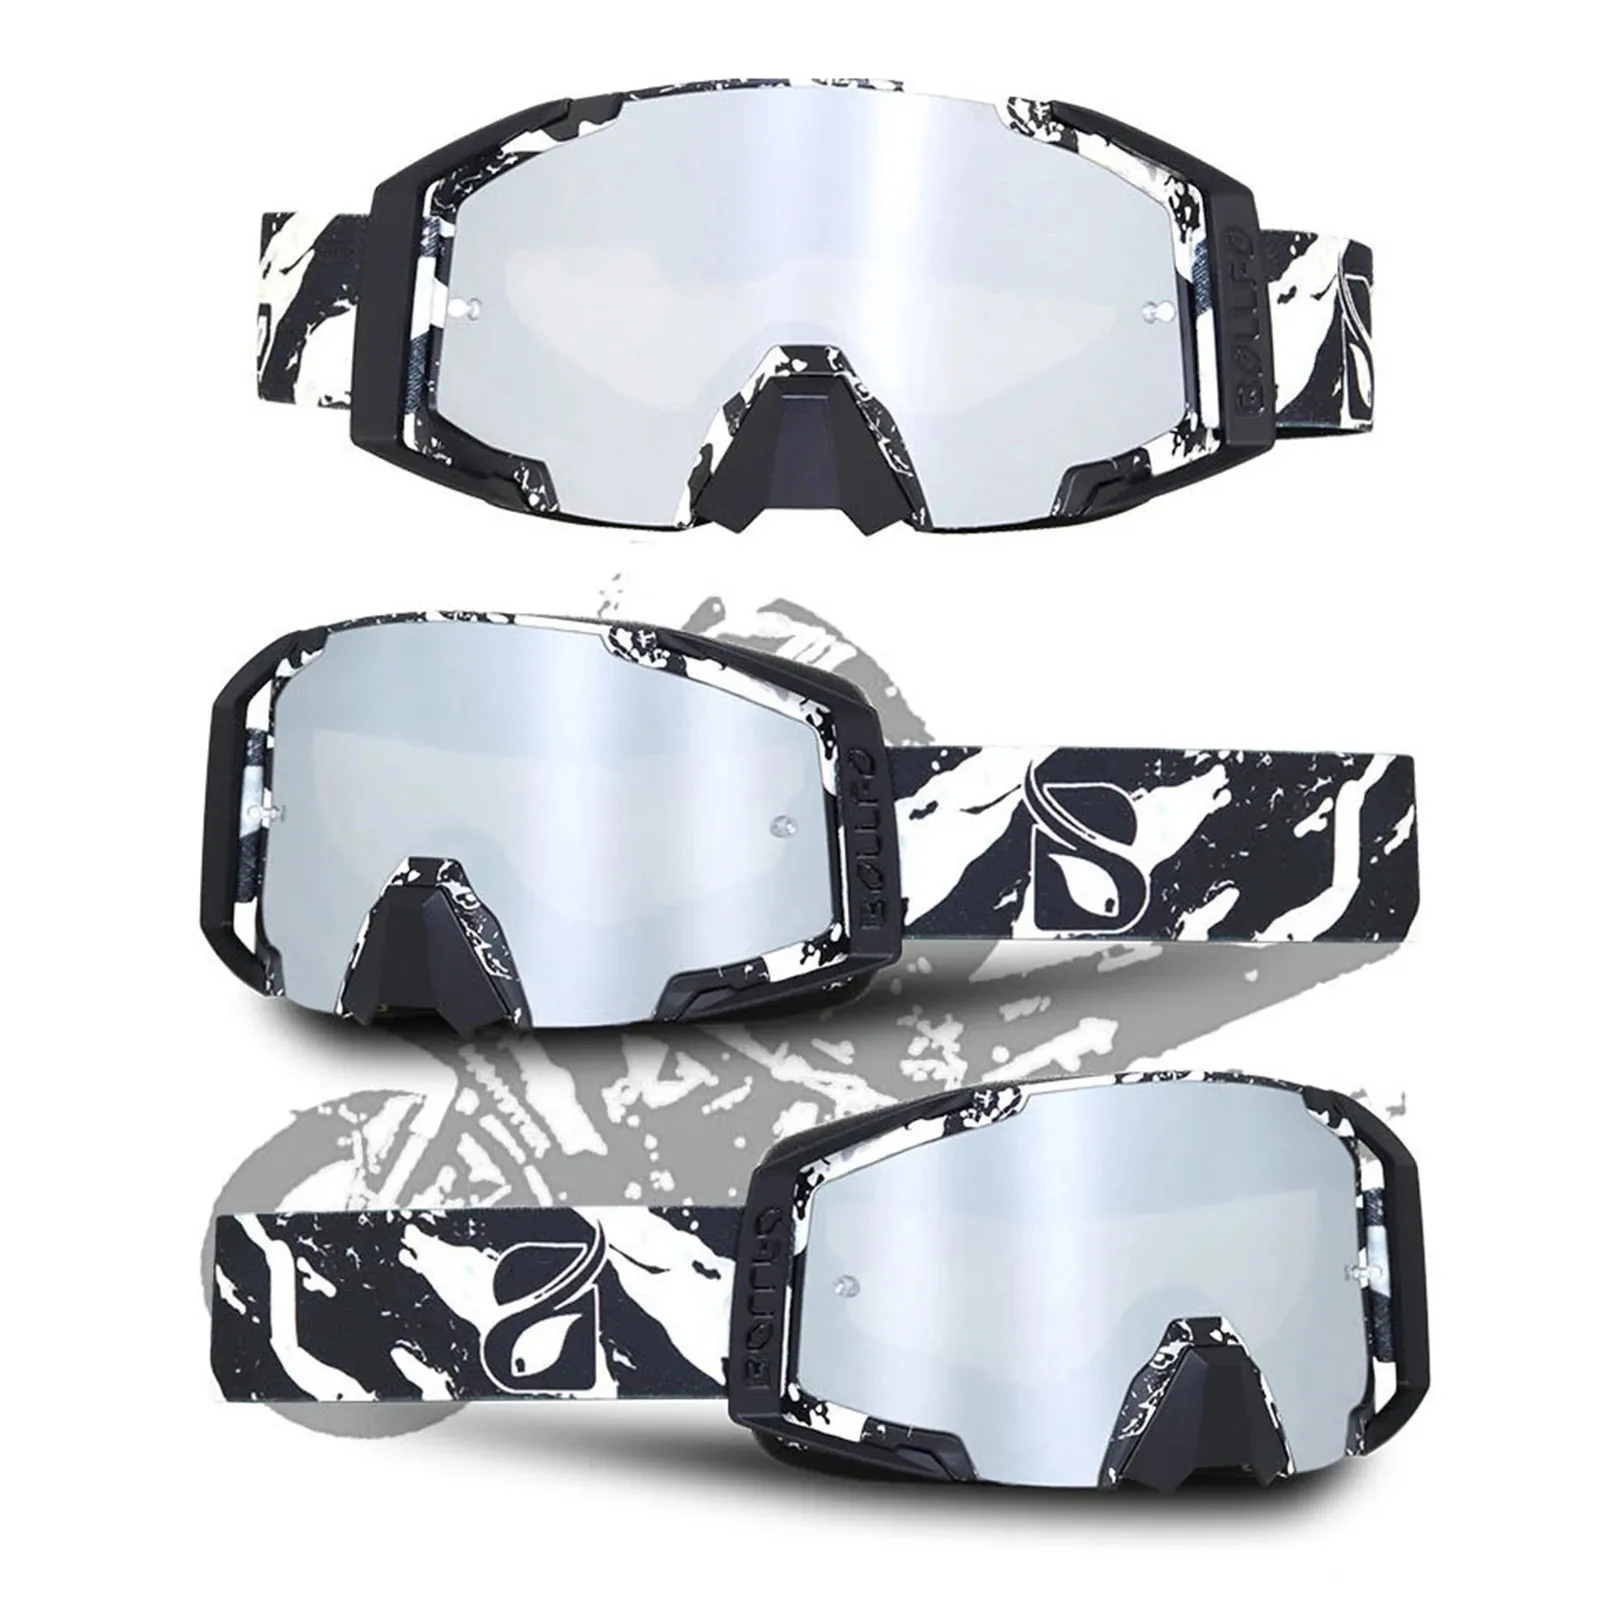 Skibrille Skibrille Schneemobil Snowboardbrille Ski Für Schneemobilbrille Skifahren Bergski Erwachsene Männer Mode Damenbrille 231115